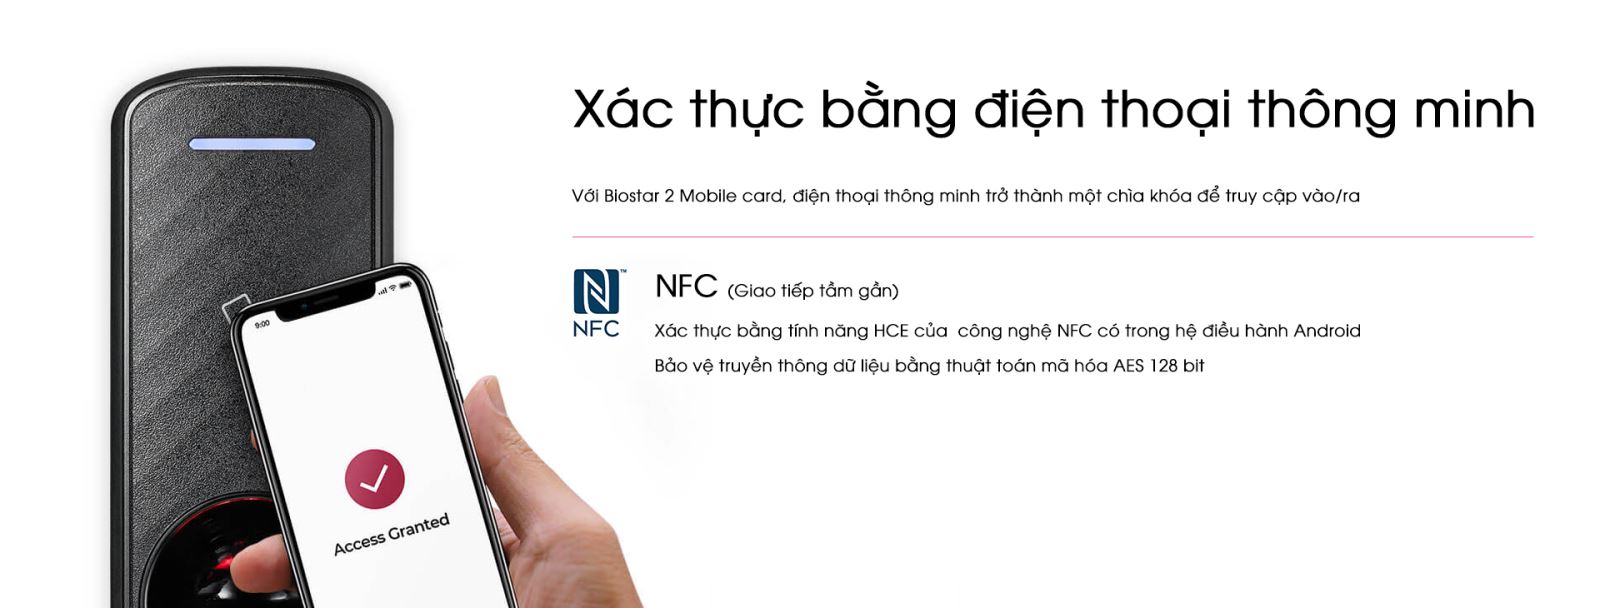 Công nghệ NFC và thông số thiết bị được hỗ trợ